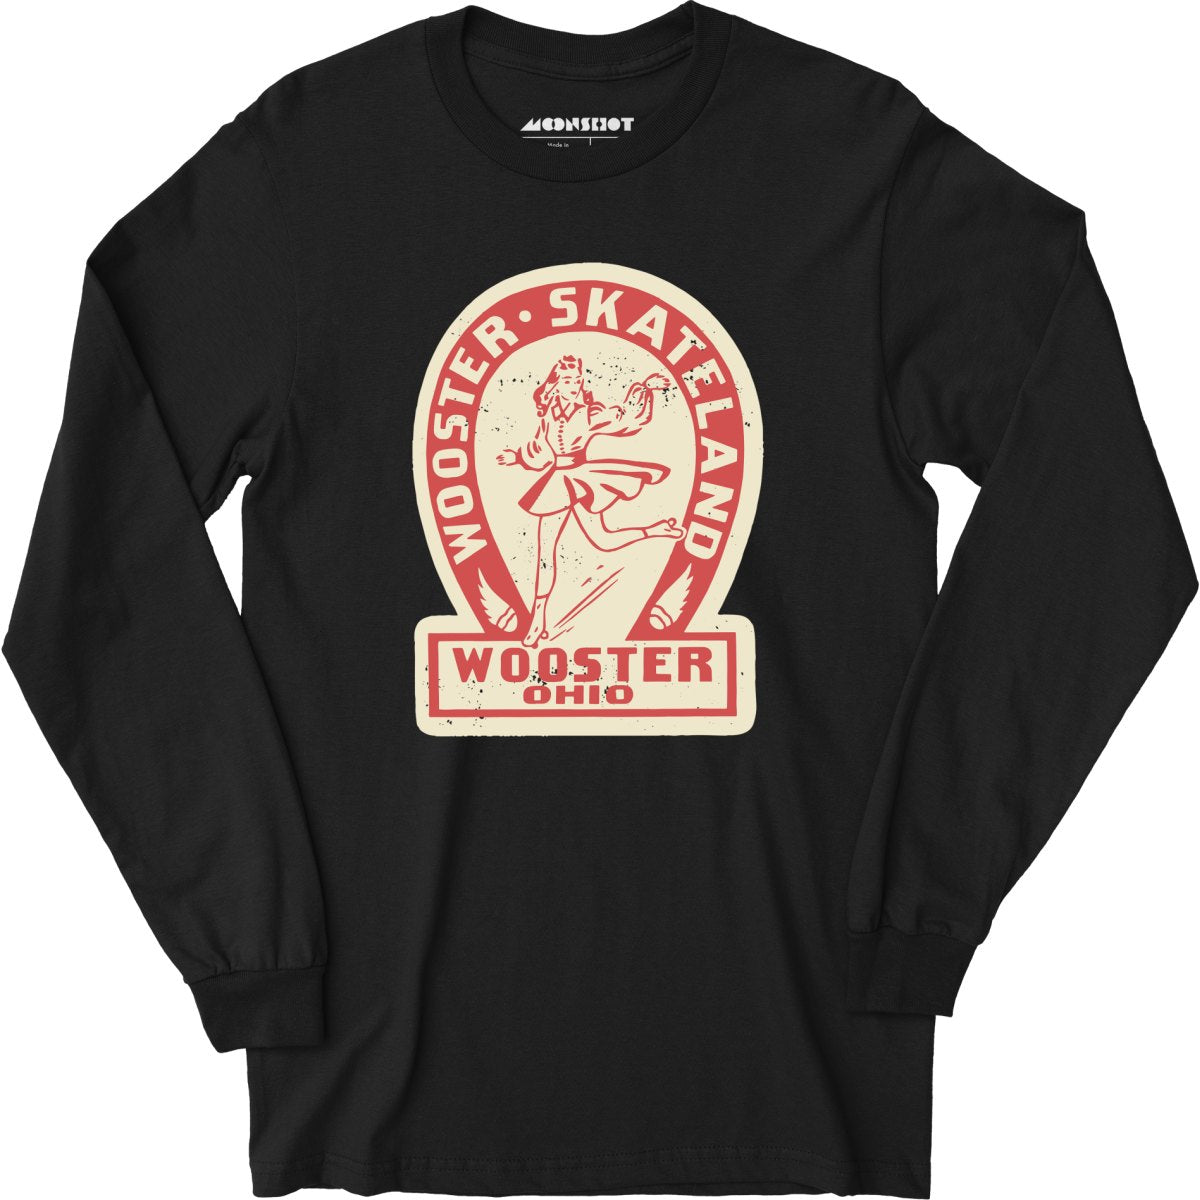 Wooster Skateland - Wooster, OH - Vintage Roller Rink - Long Sleeve T-Shirt